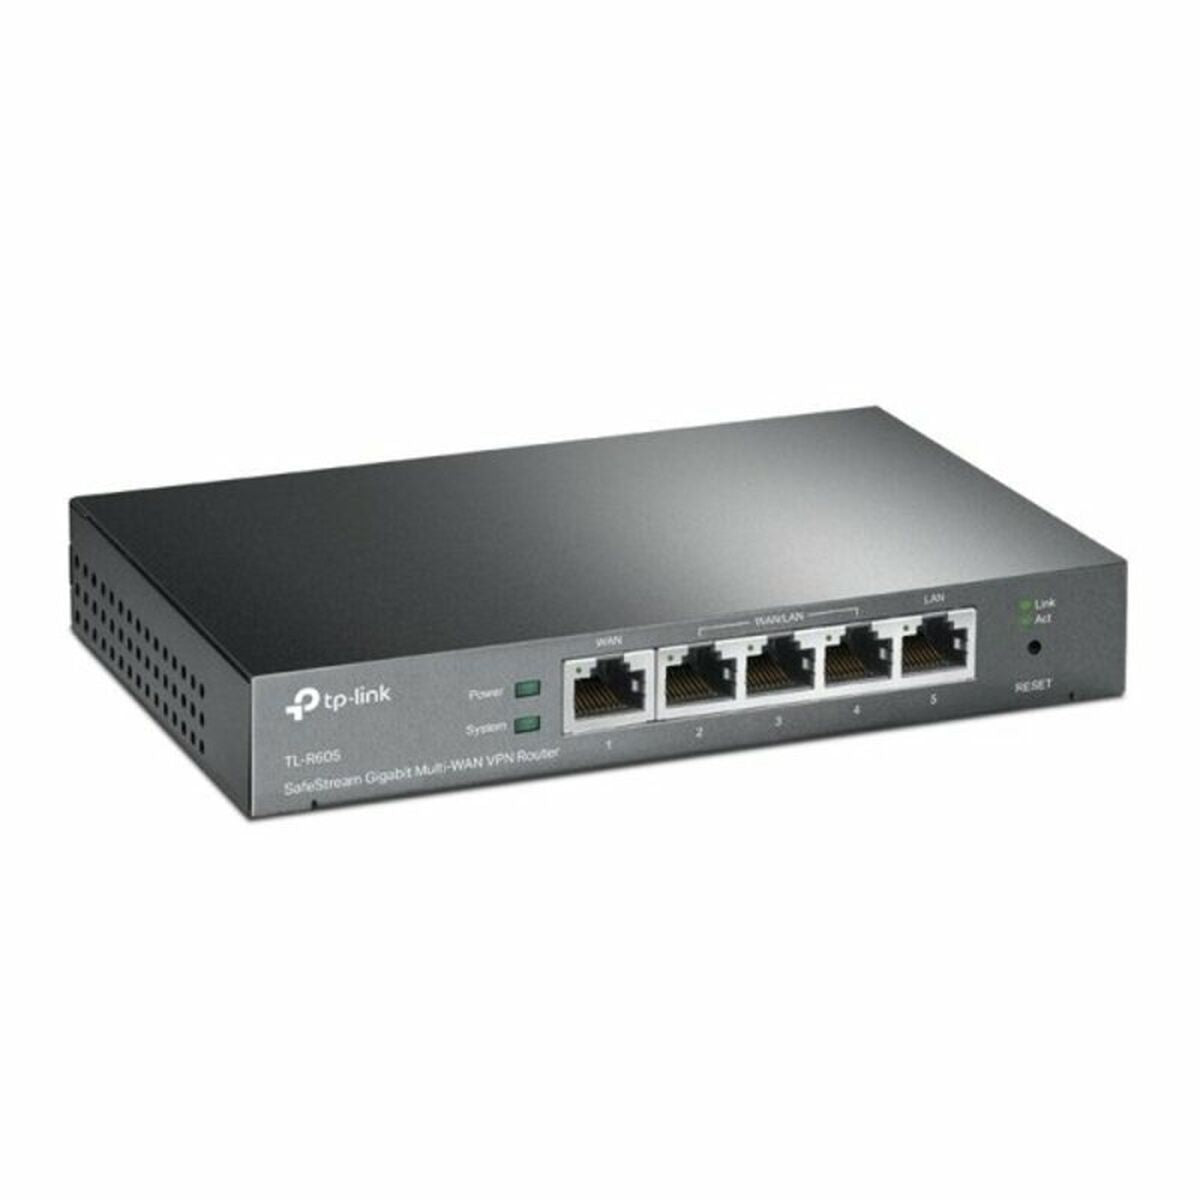 Router TP-Link TL-R605 VPN-2